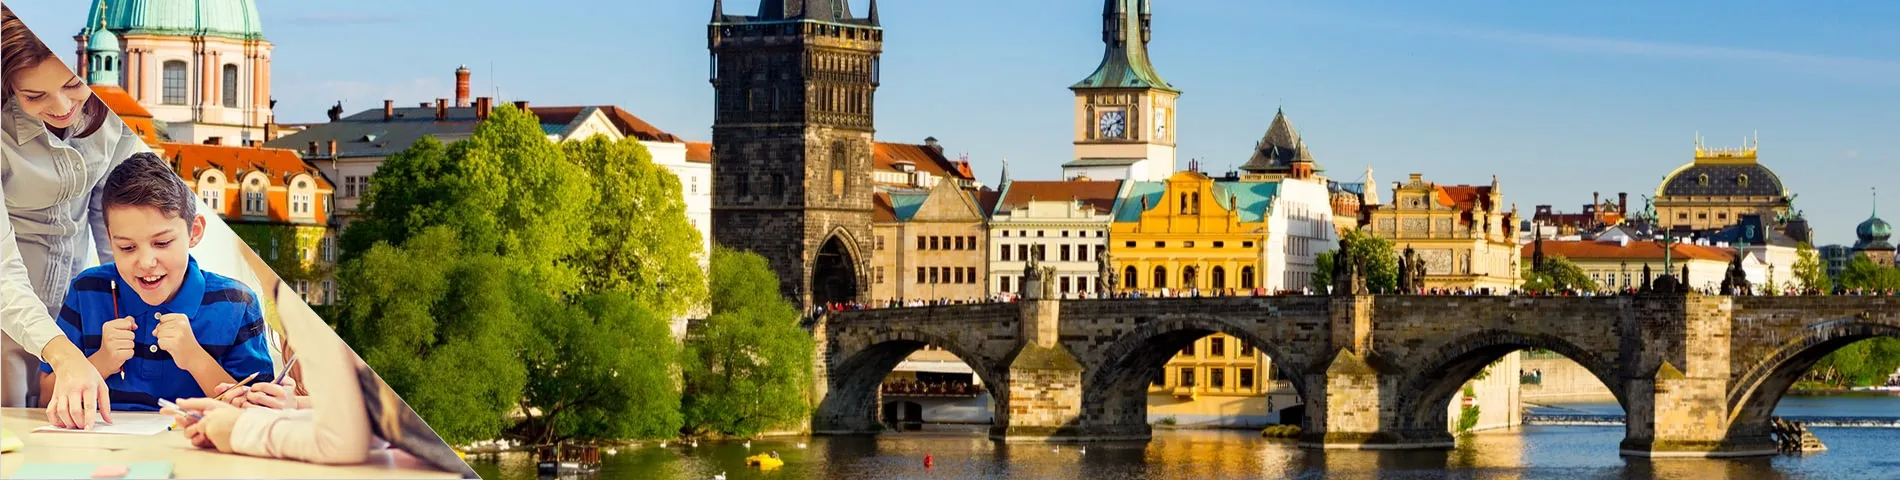 Прага - Чешский для Учителей